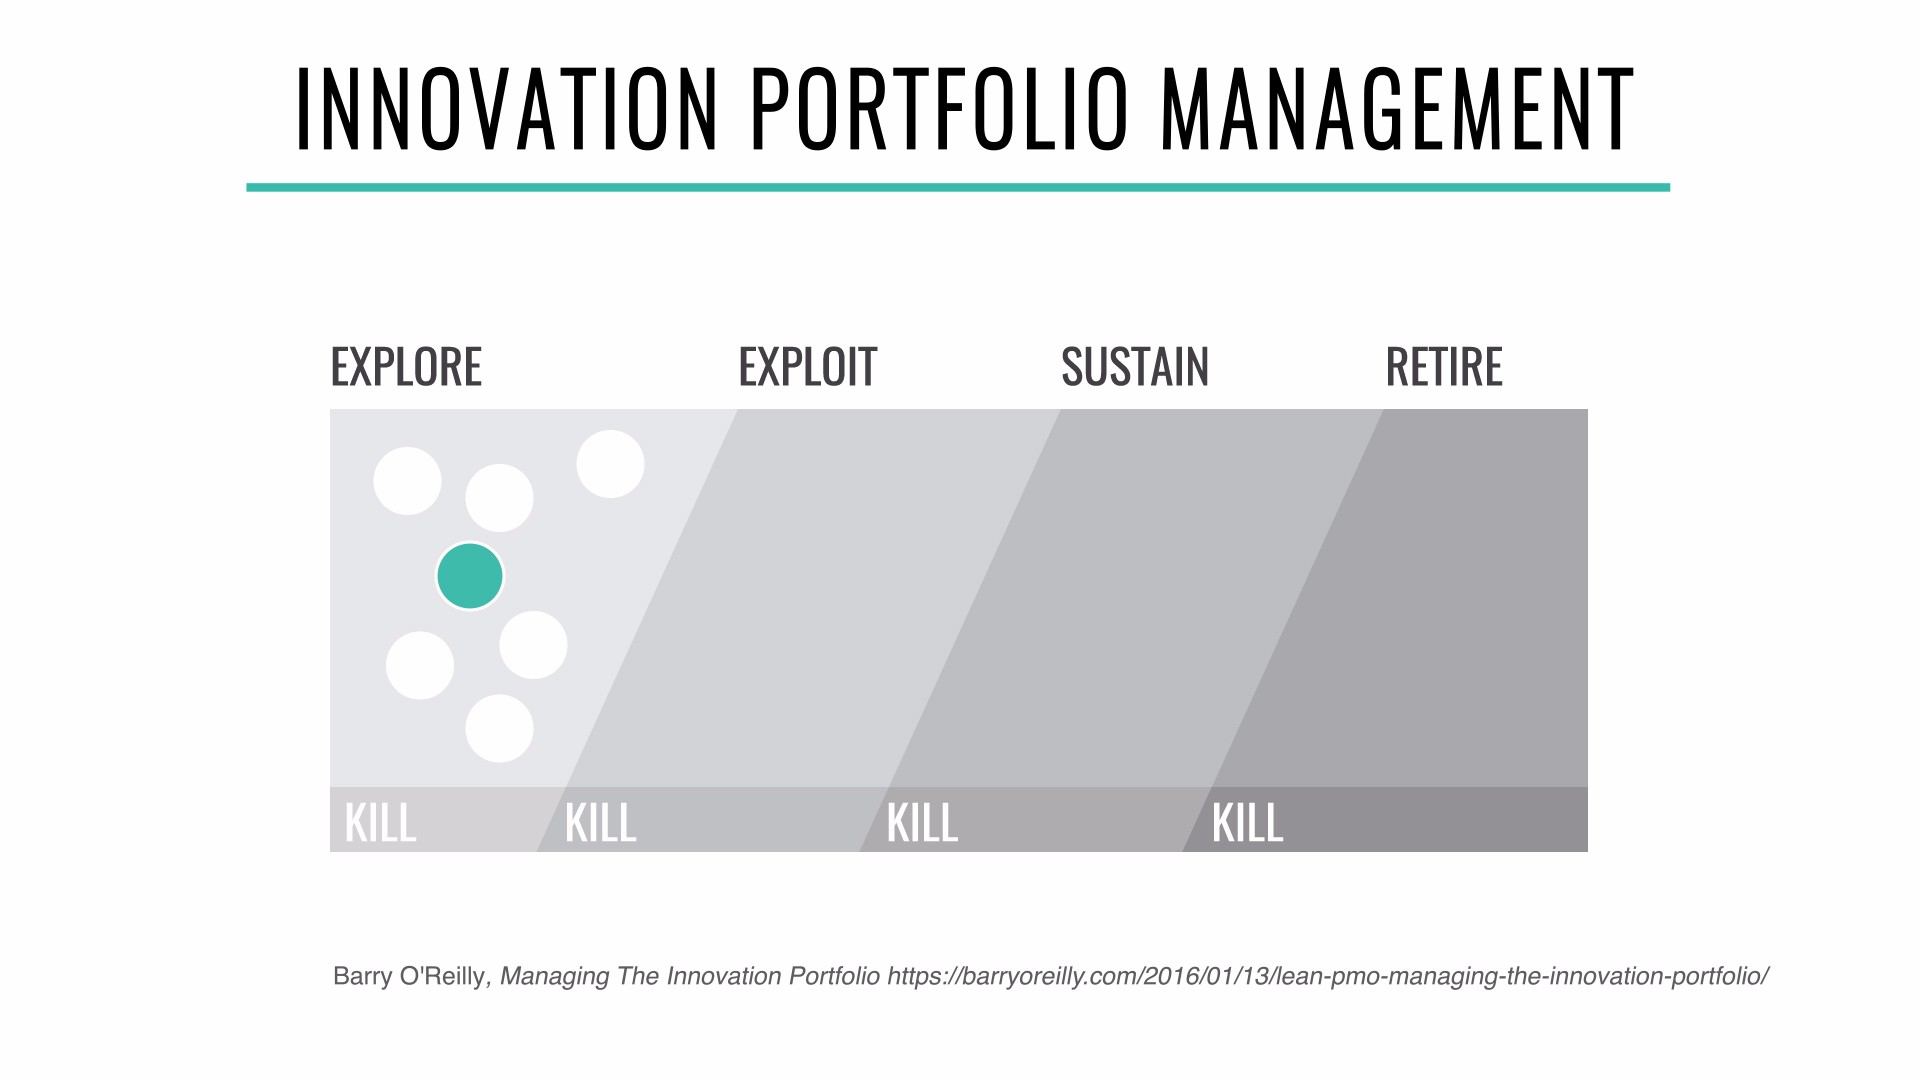 Innovation portfolio management